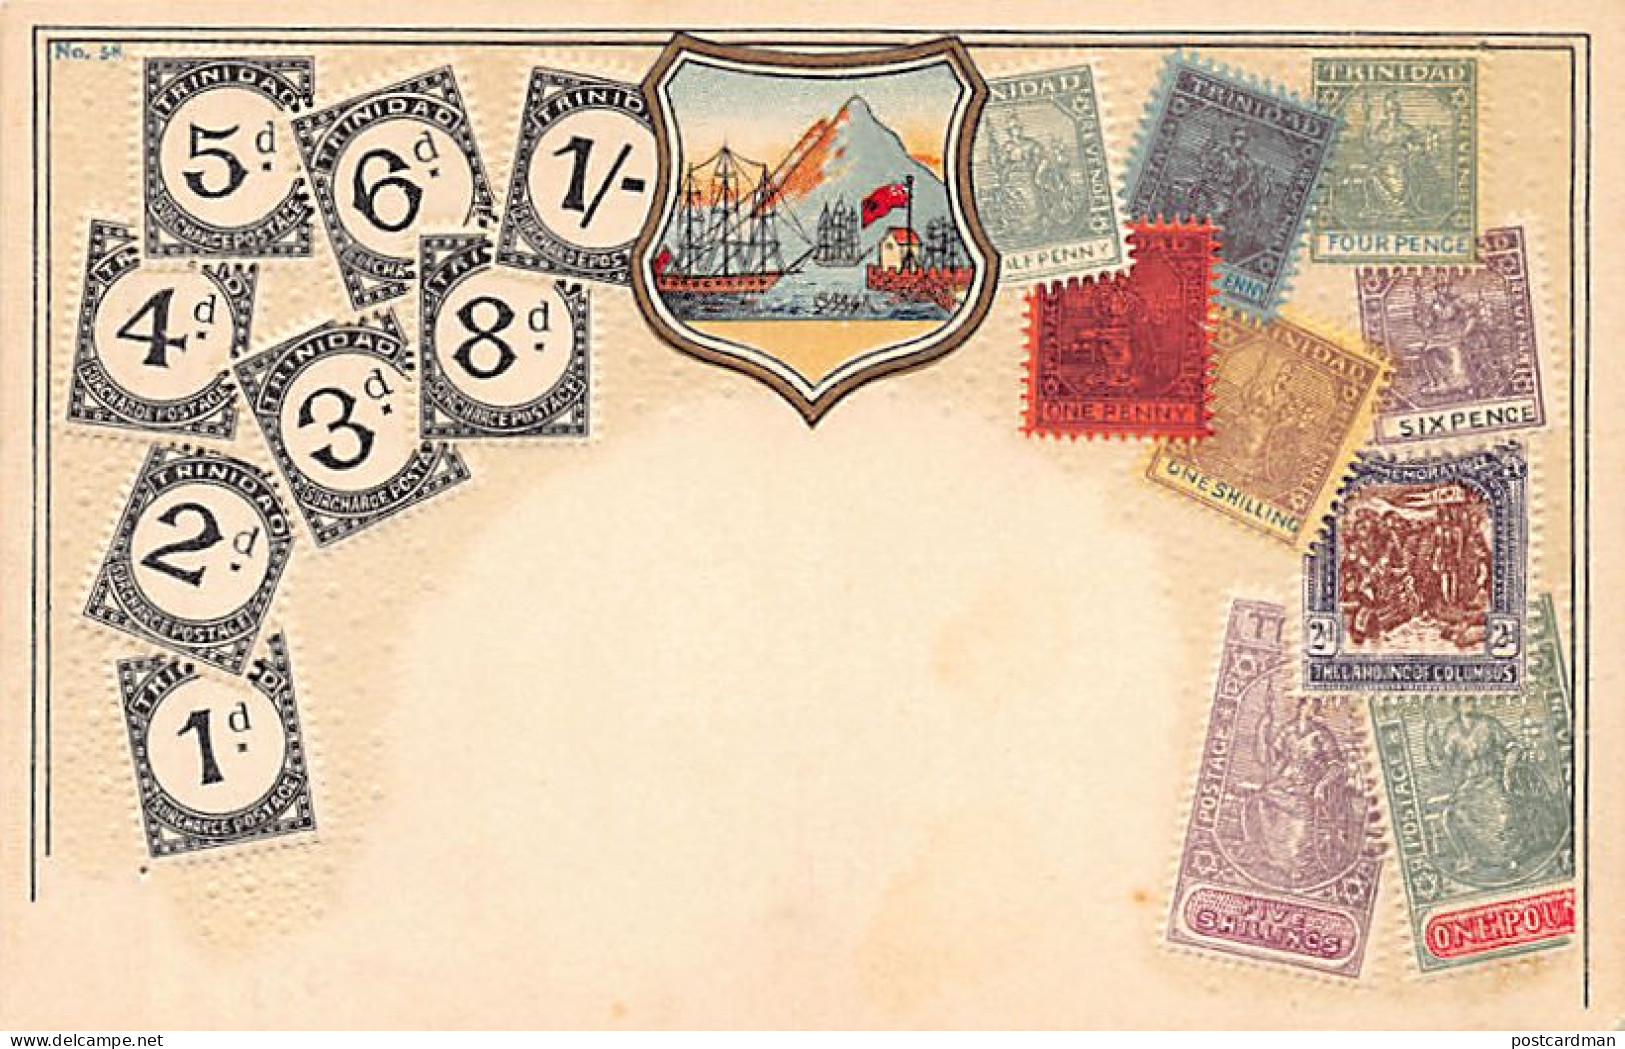 Trinidad - Stamps Of Trinidad - Philatelic Postcard - Publ. O. Zieher  - Trinidad